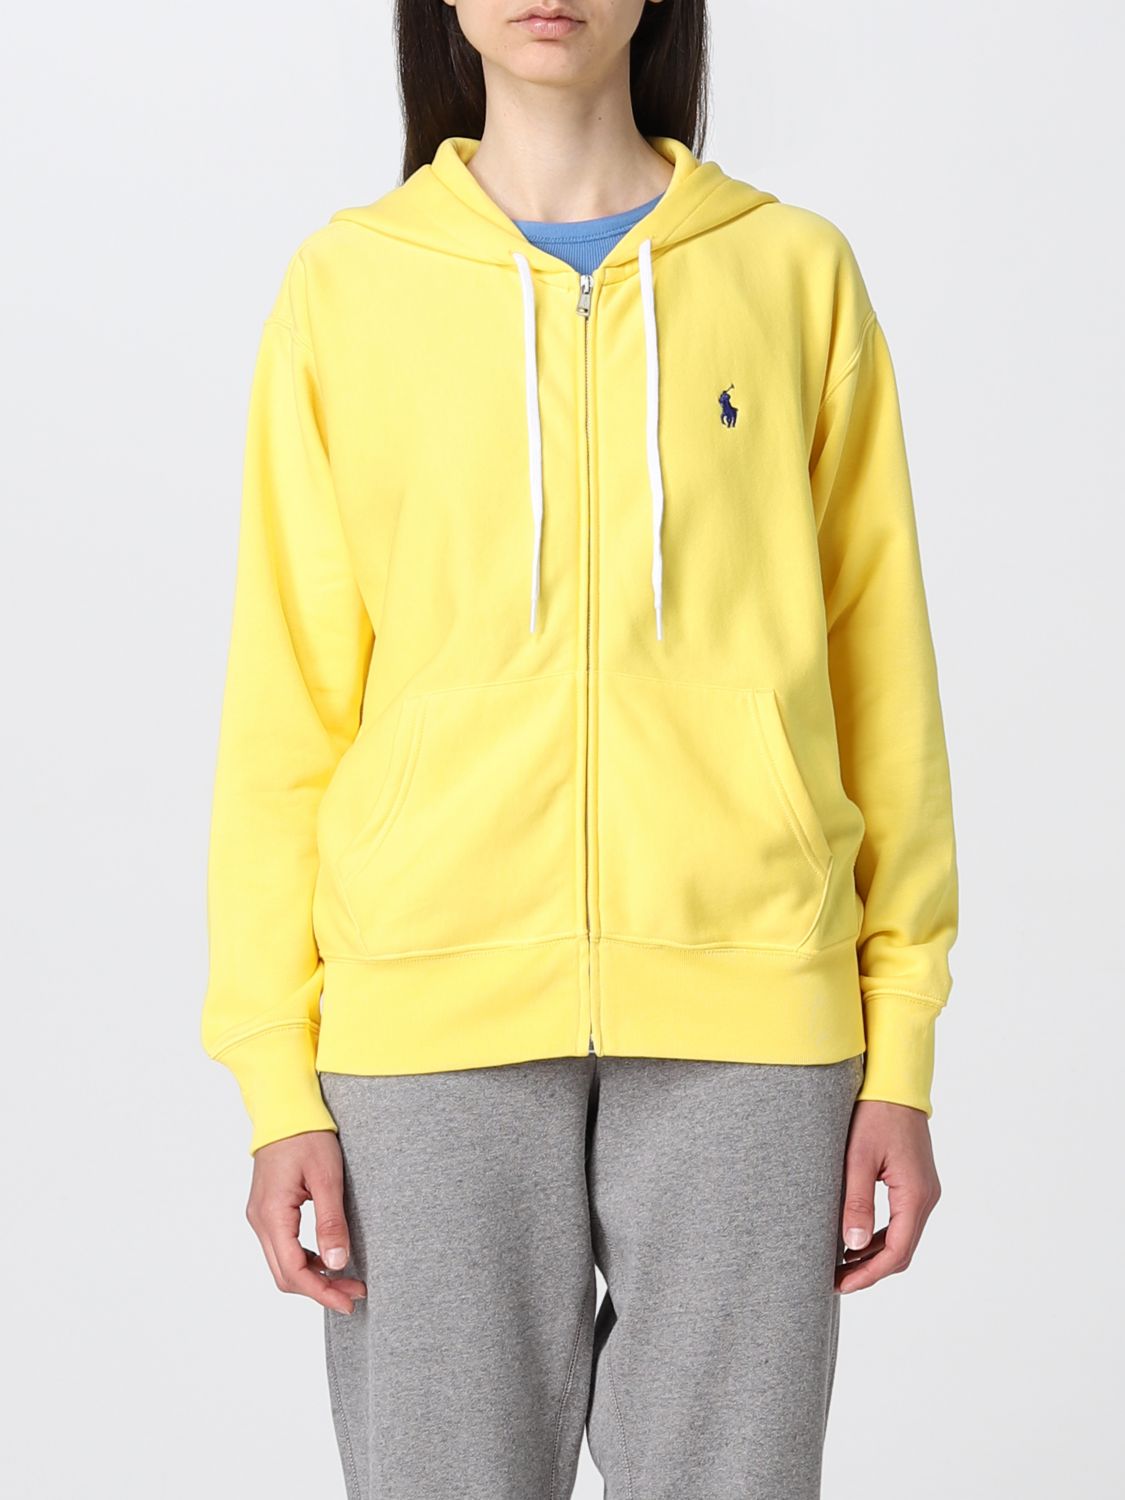 POLO RALPH LAUREN: hoodie - Yellow | Polo Ralph Lauren sweatshirt 211780303  online on 